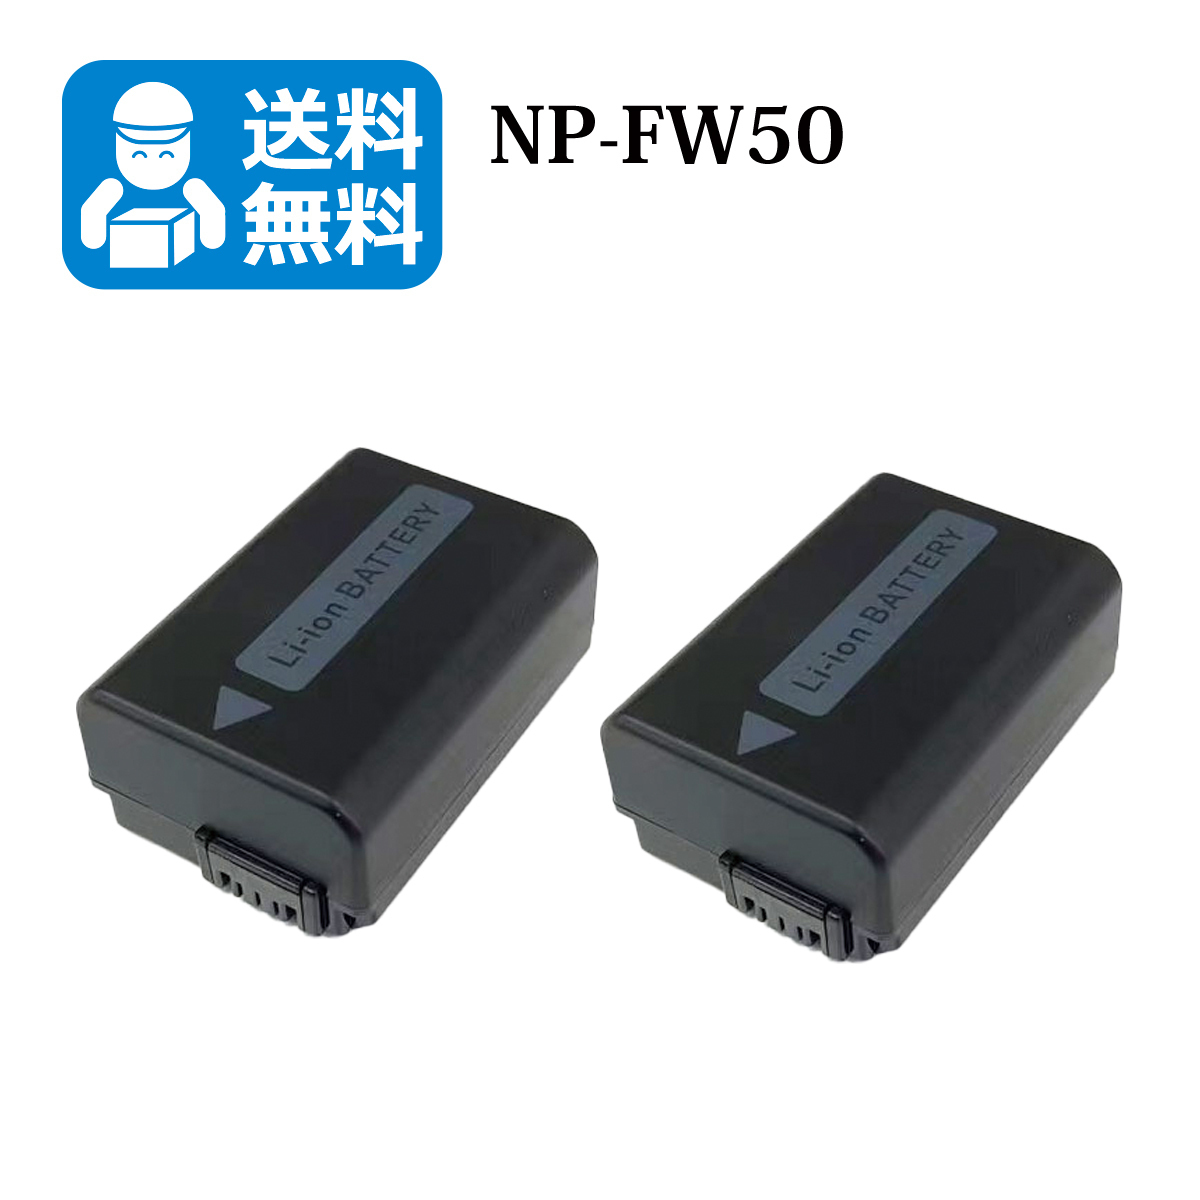 NP-FW50 * free shipping * Sony interchangeable battery 2 piece DSC-T100 / DSC-T20 / DSC-N1 / DSC-N2 / ILCE-7S / ILCE-7